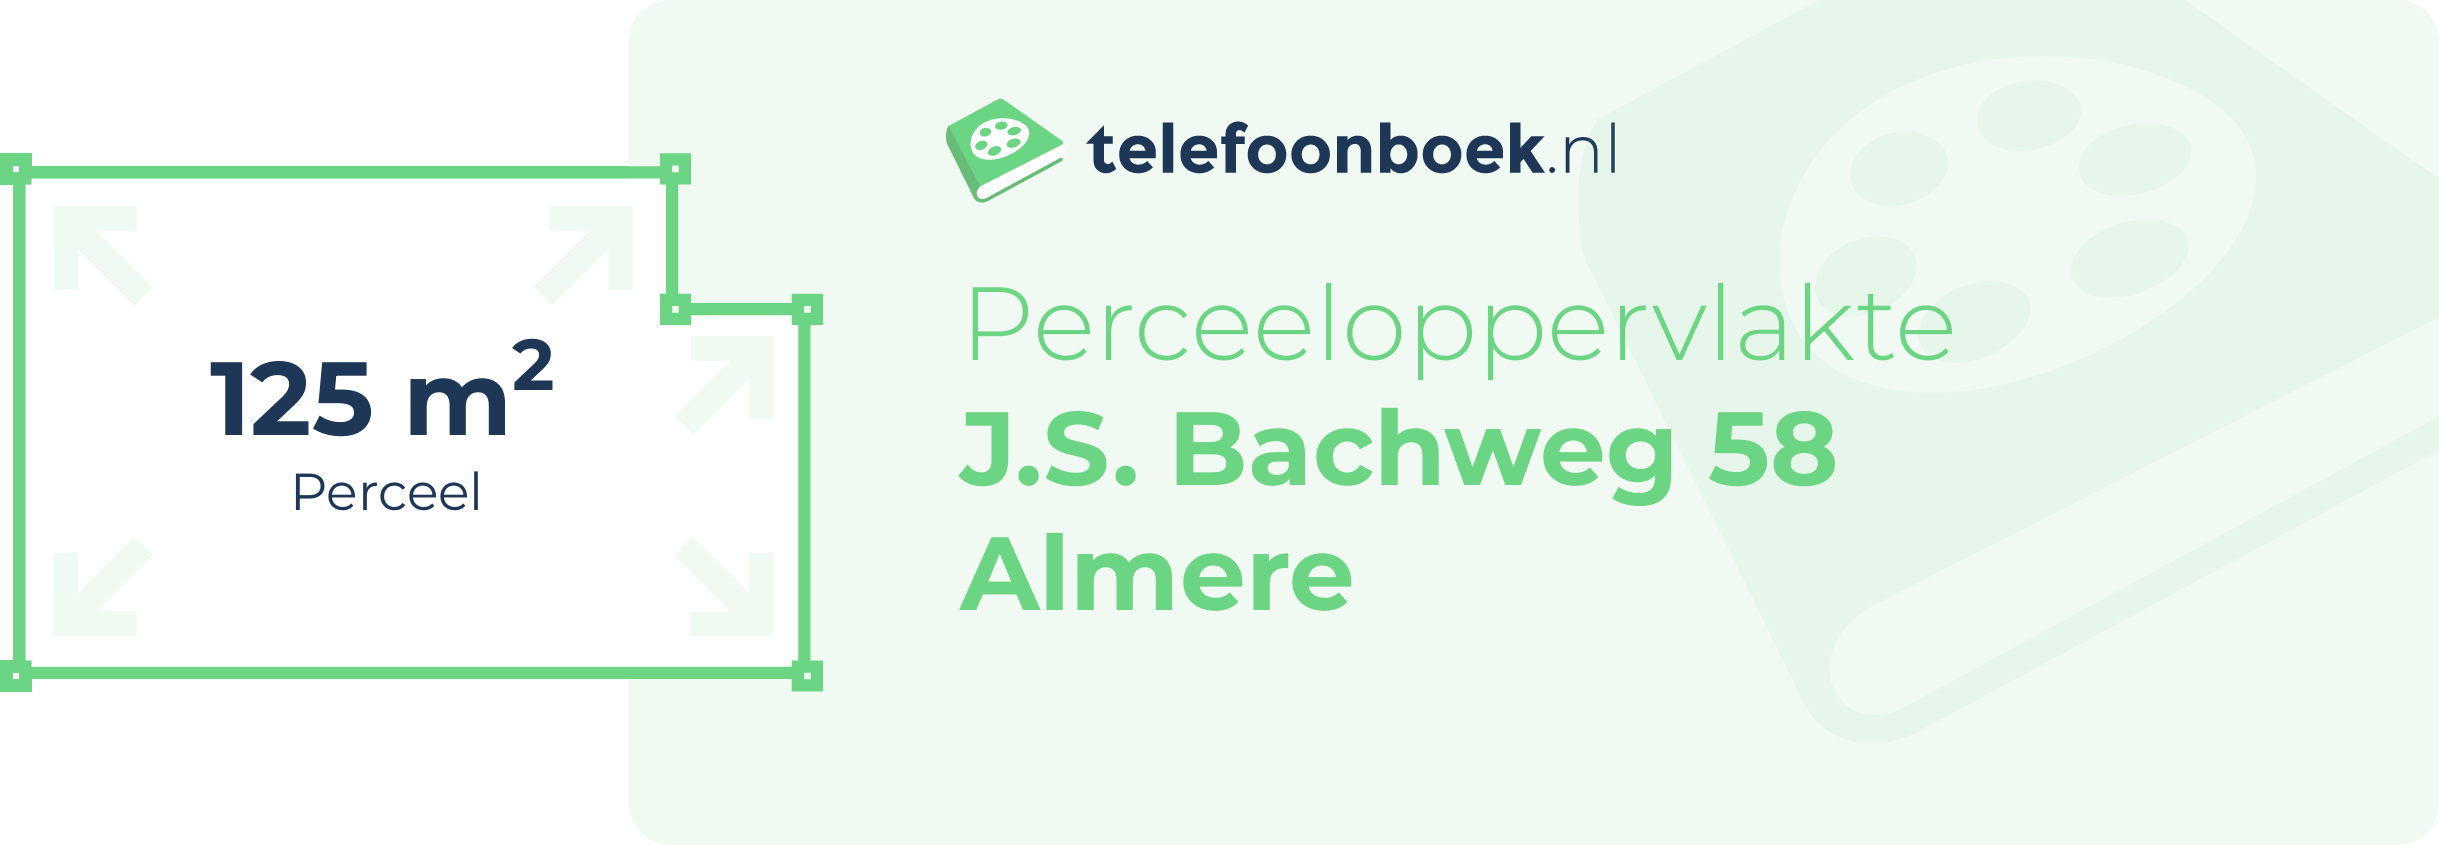 Perceeloppervlakte J.S. Bachweg 58 Almere